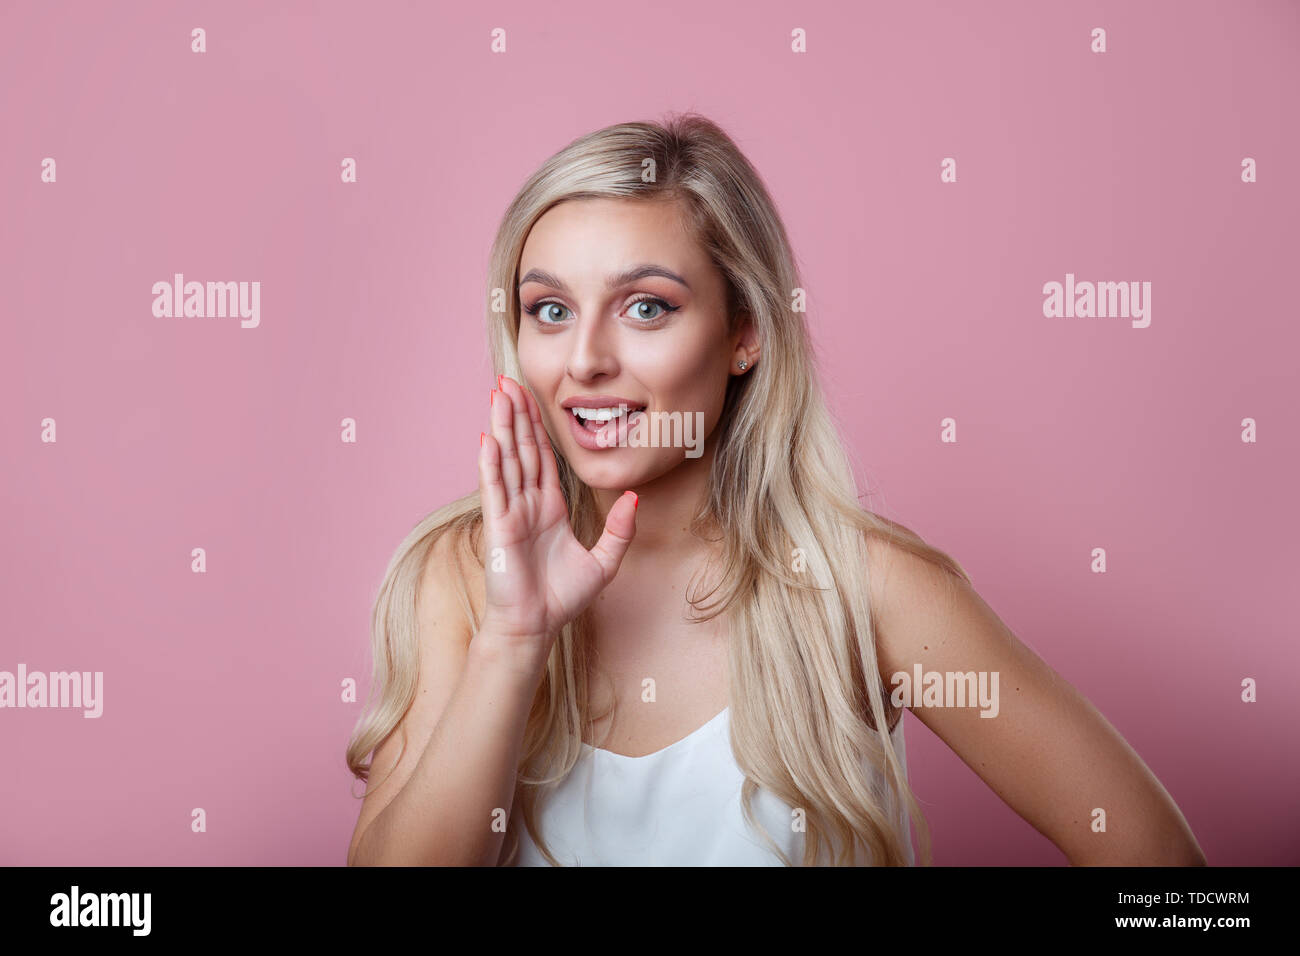 Gesprächig geheimnisvolle ziemlich schöne Frau mit blonden Haaren sagen geheimen heißen Bremsen Nachrichten und Kamera auf rosa Hintergrund Stockfoto